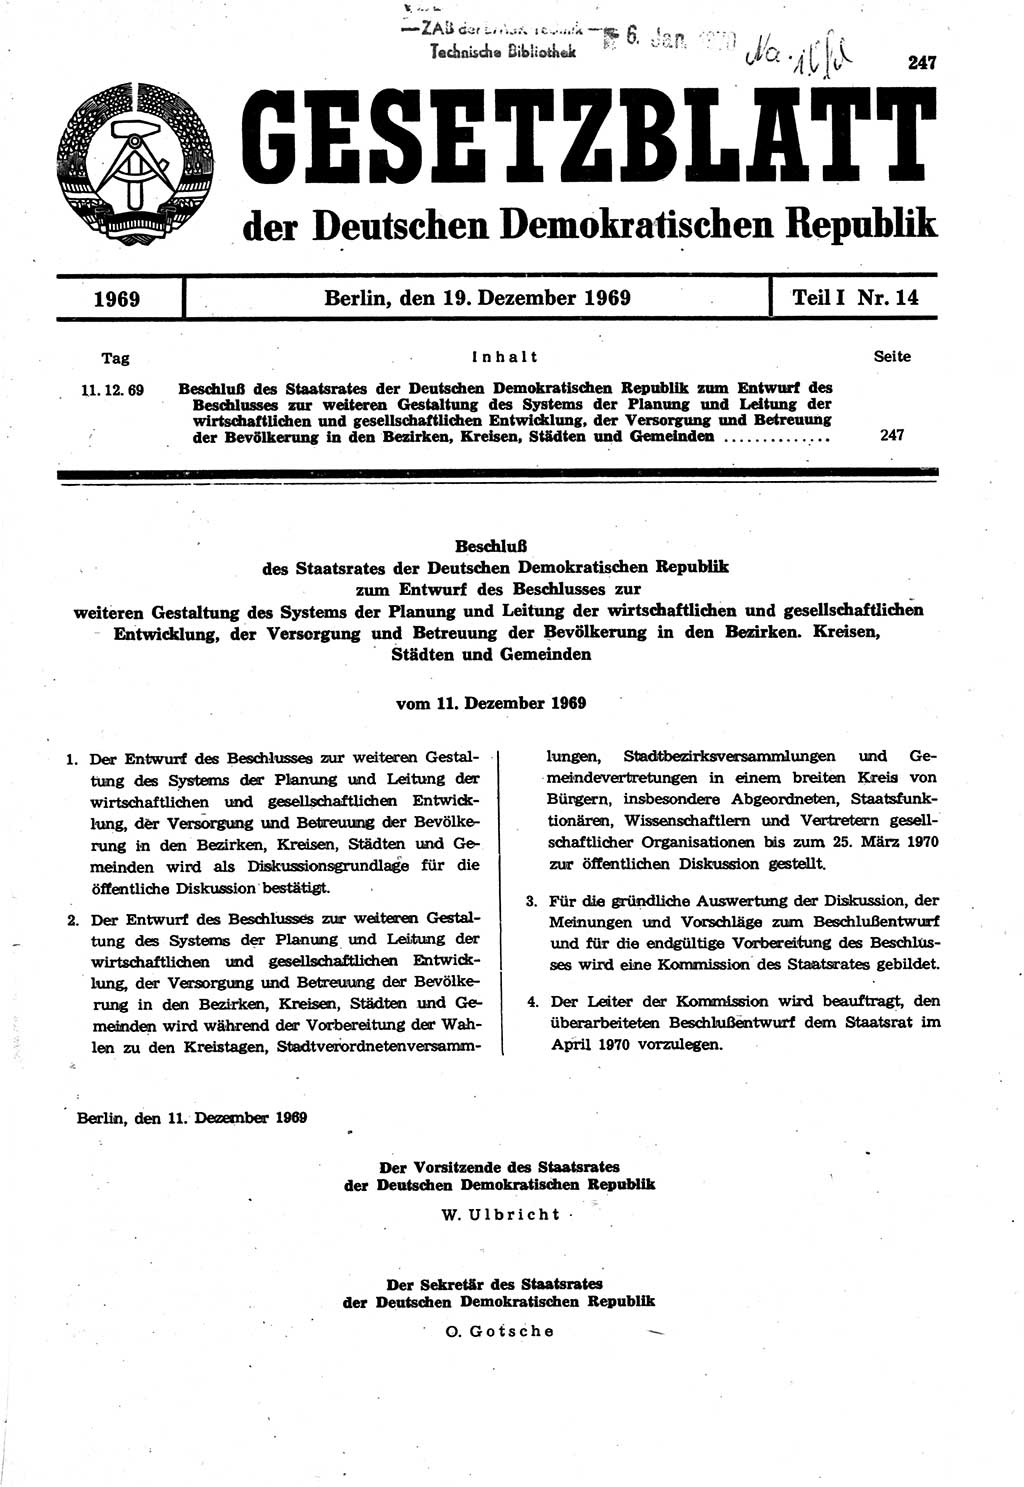 Gesetzblatt (GBl.) der Deutschen Demokratischen Republik (DDR) Teil Ⅰ 1969, Seite 247 (GBl. DDR Ⅰ 1969, S. 247)